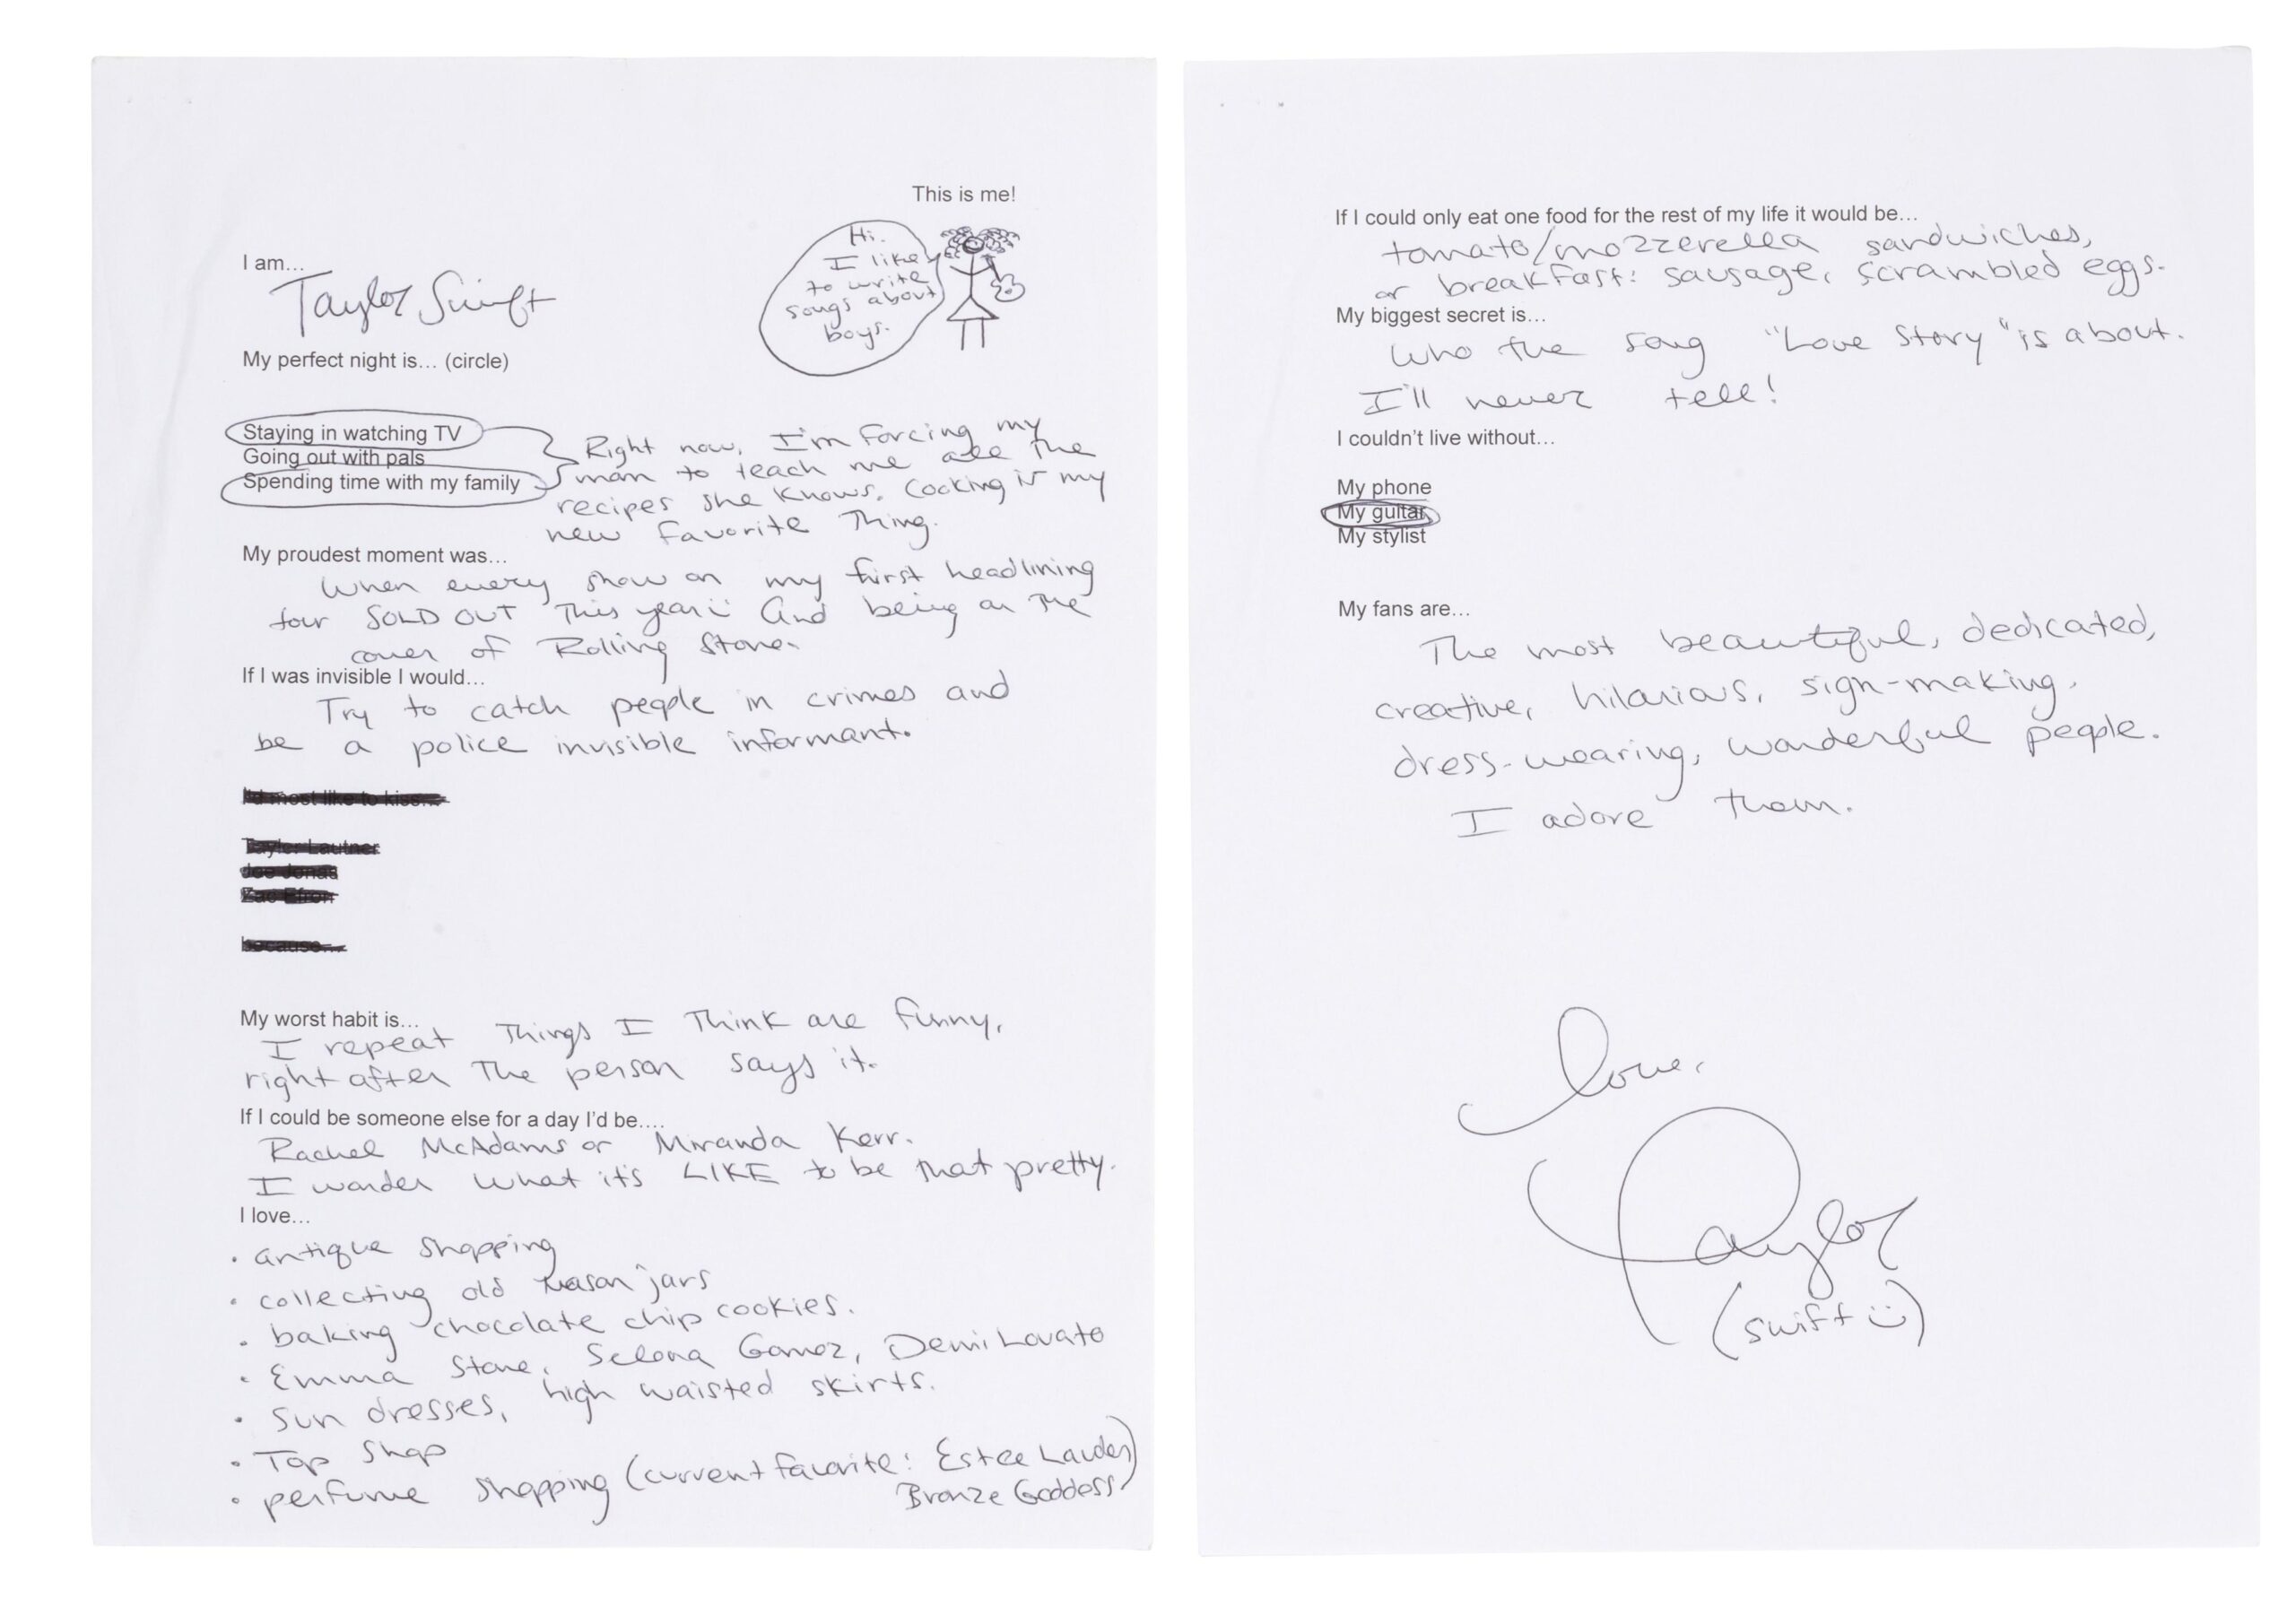 Taylor Swift handwritten note